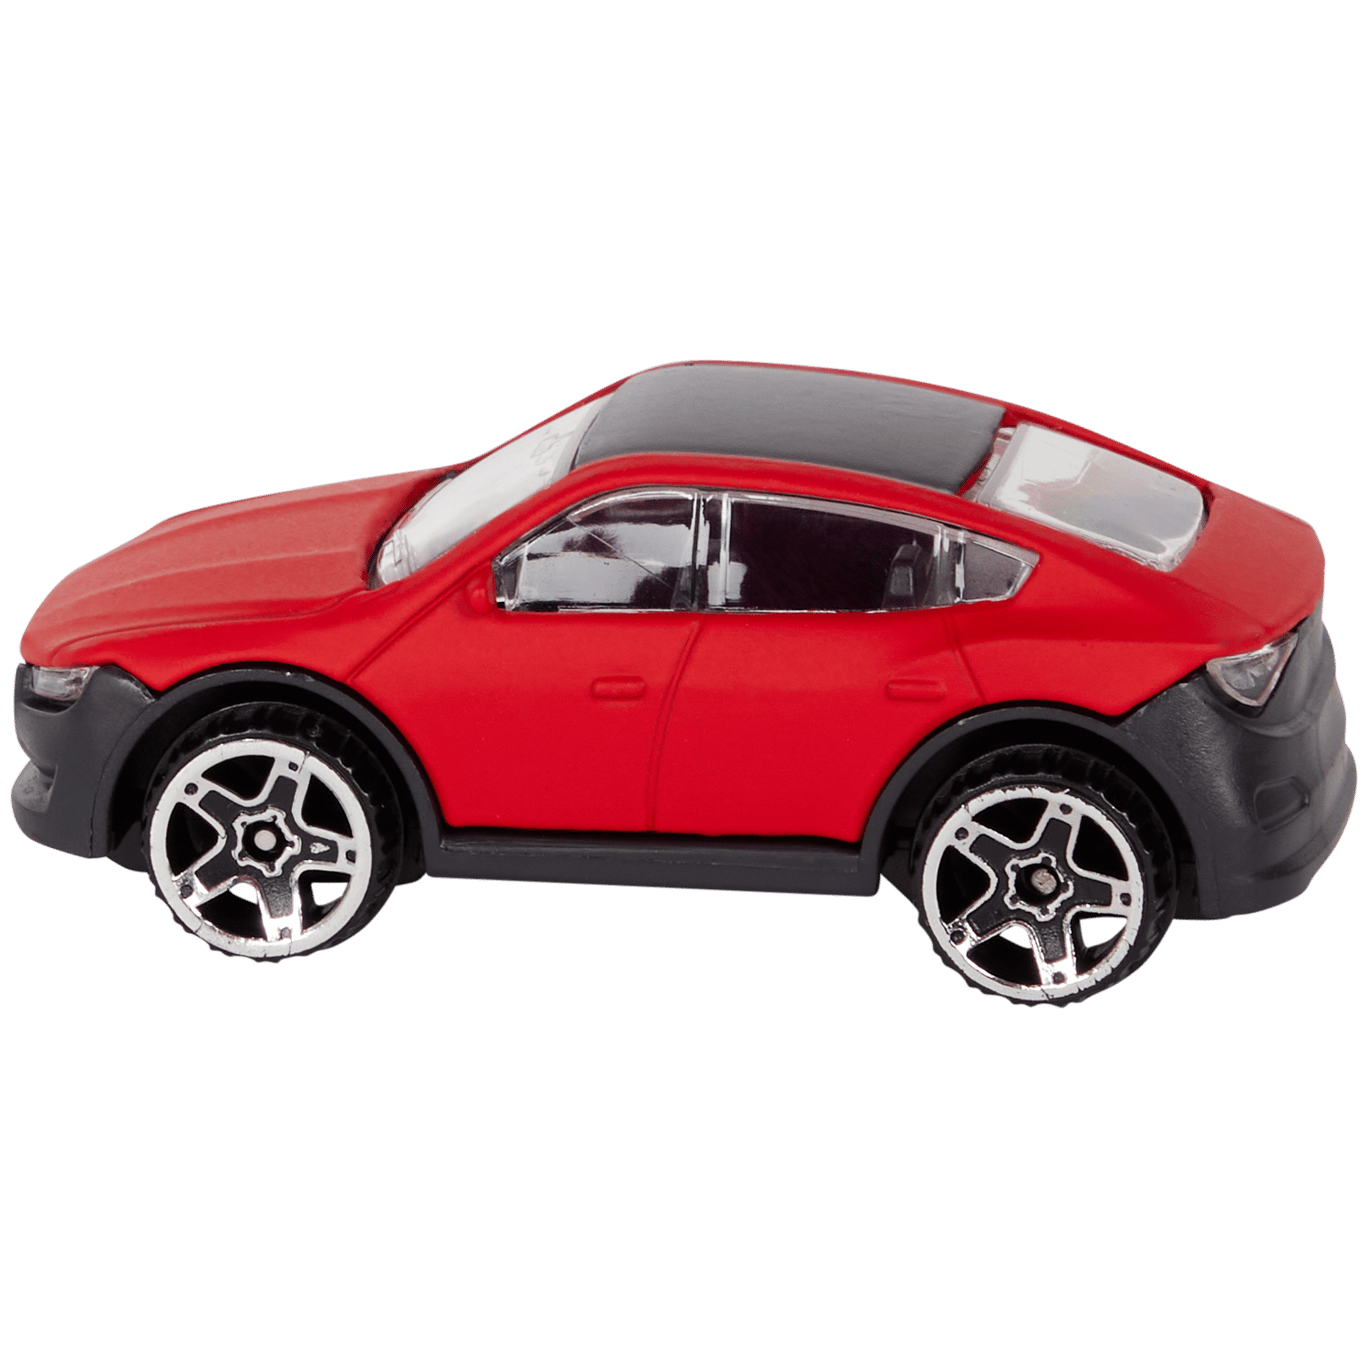 Speelgoedauto's de laagste prijs | Action.com